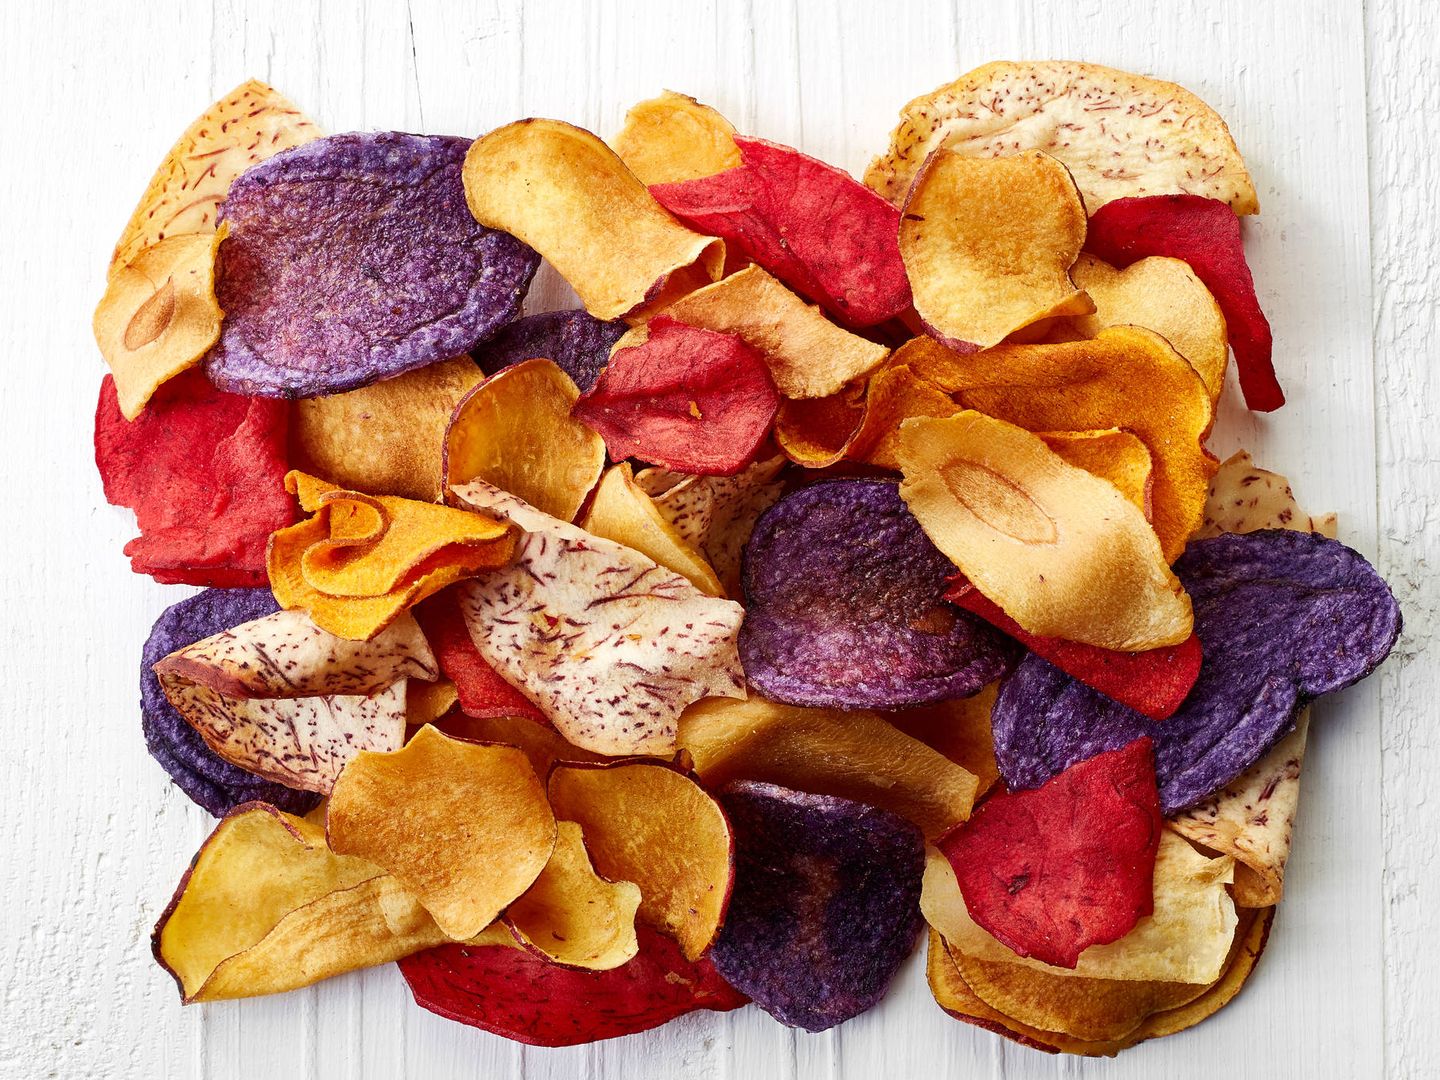 Los chips vegetales son una opción más sana.